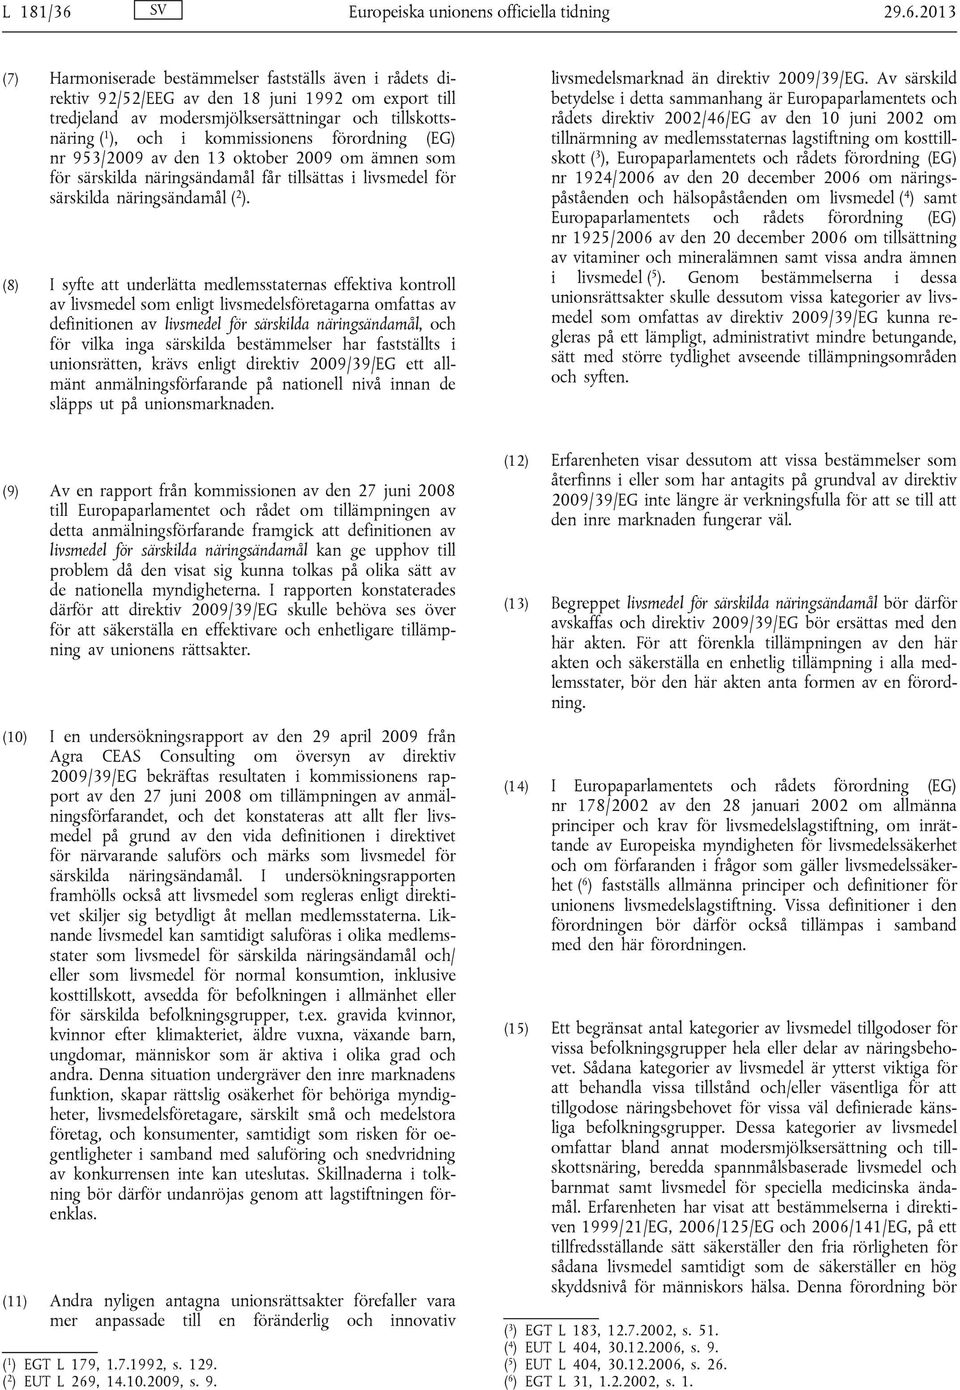 2013 (7) Harmoniserade bestämmelser fastställs även i rådets direktiv 92/52/EEG av den 18 juni 1992 om export till tredjeland av modersmjölksersättningar och tillskottsnäring ( 1 ), och i